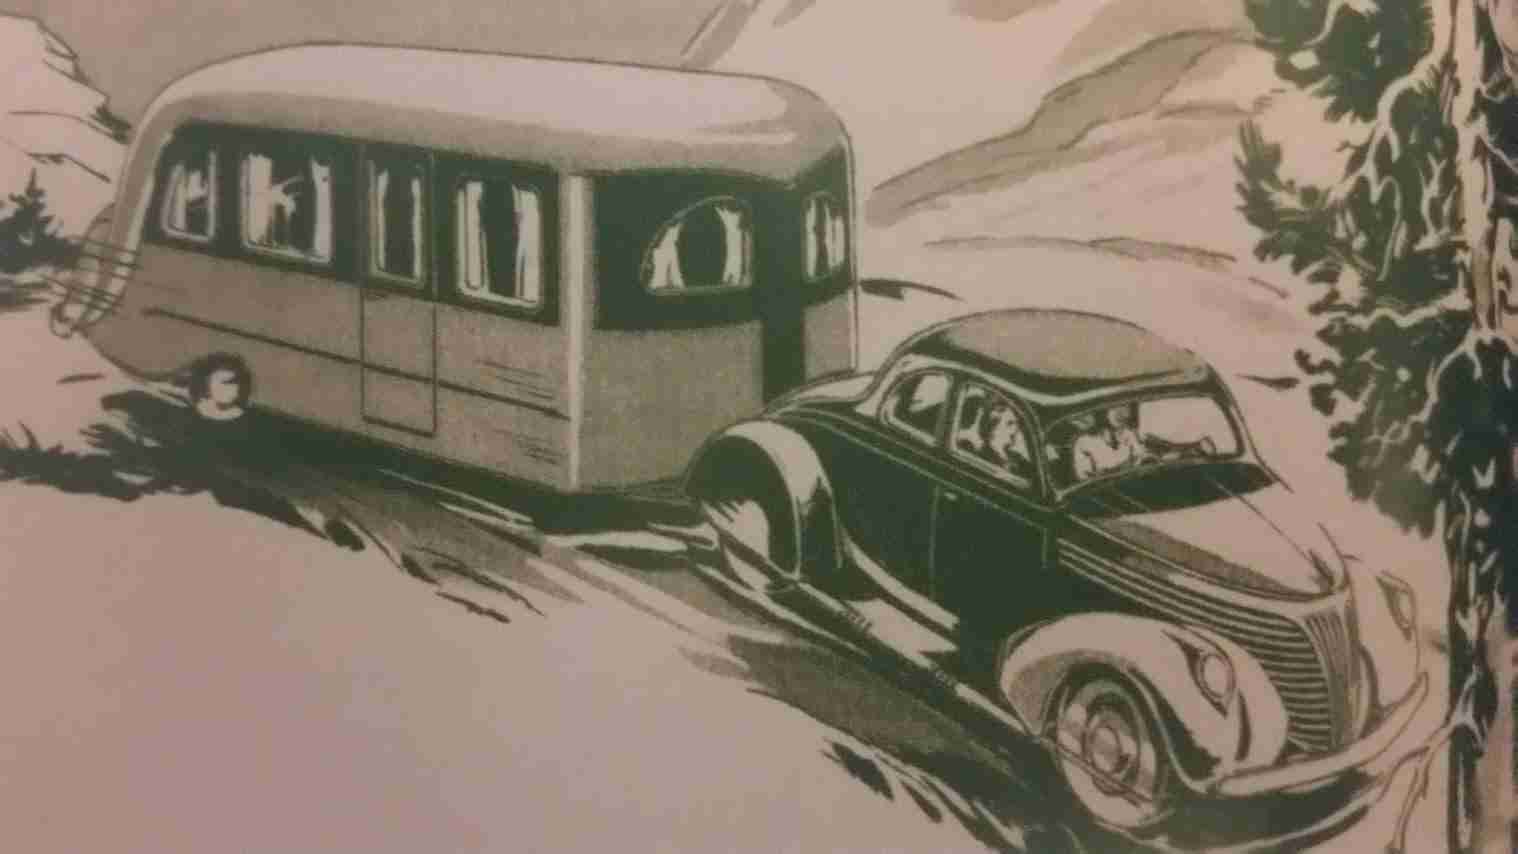 illustration of vintage camper being pulled